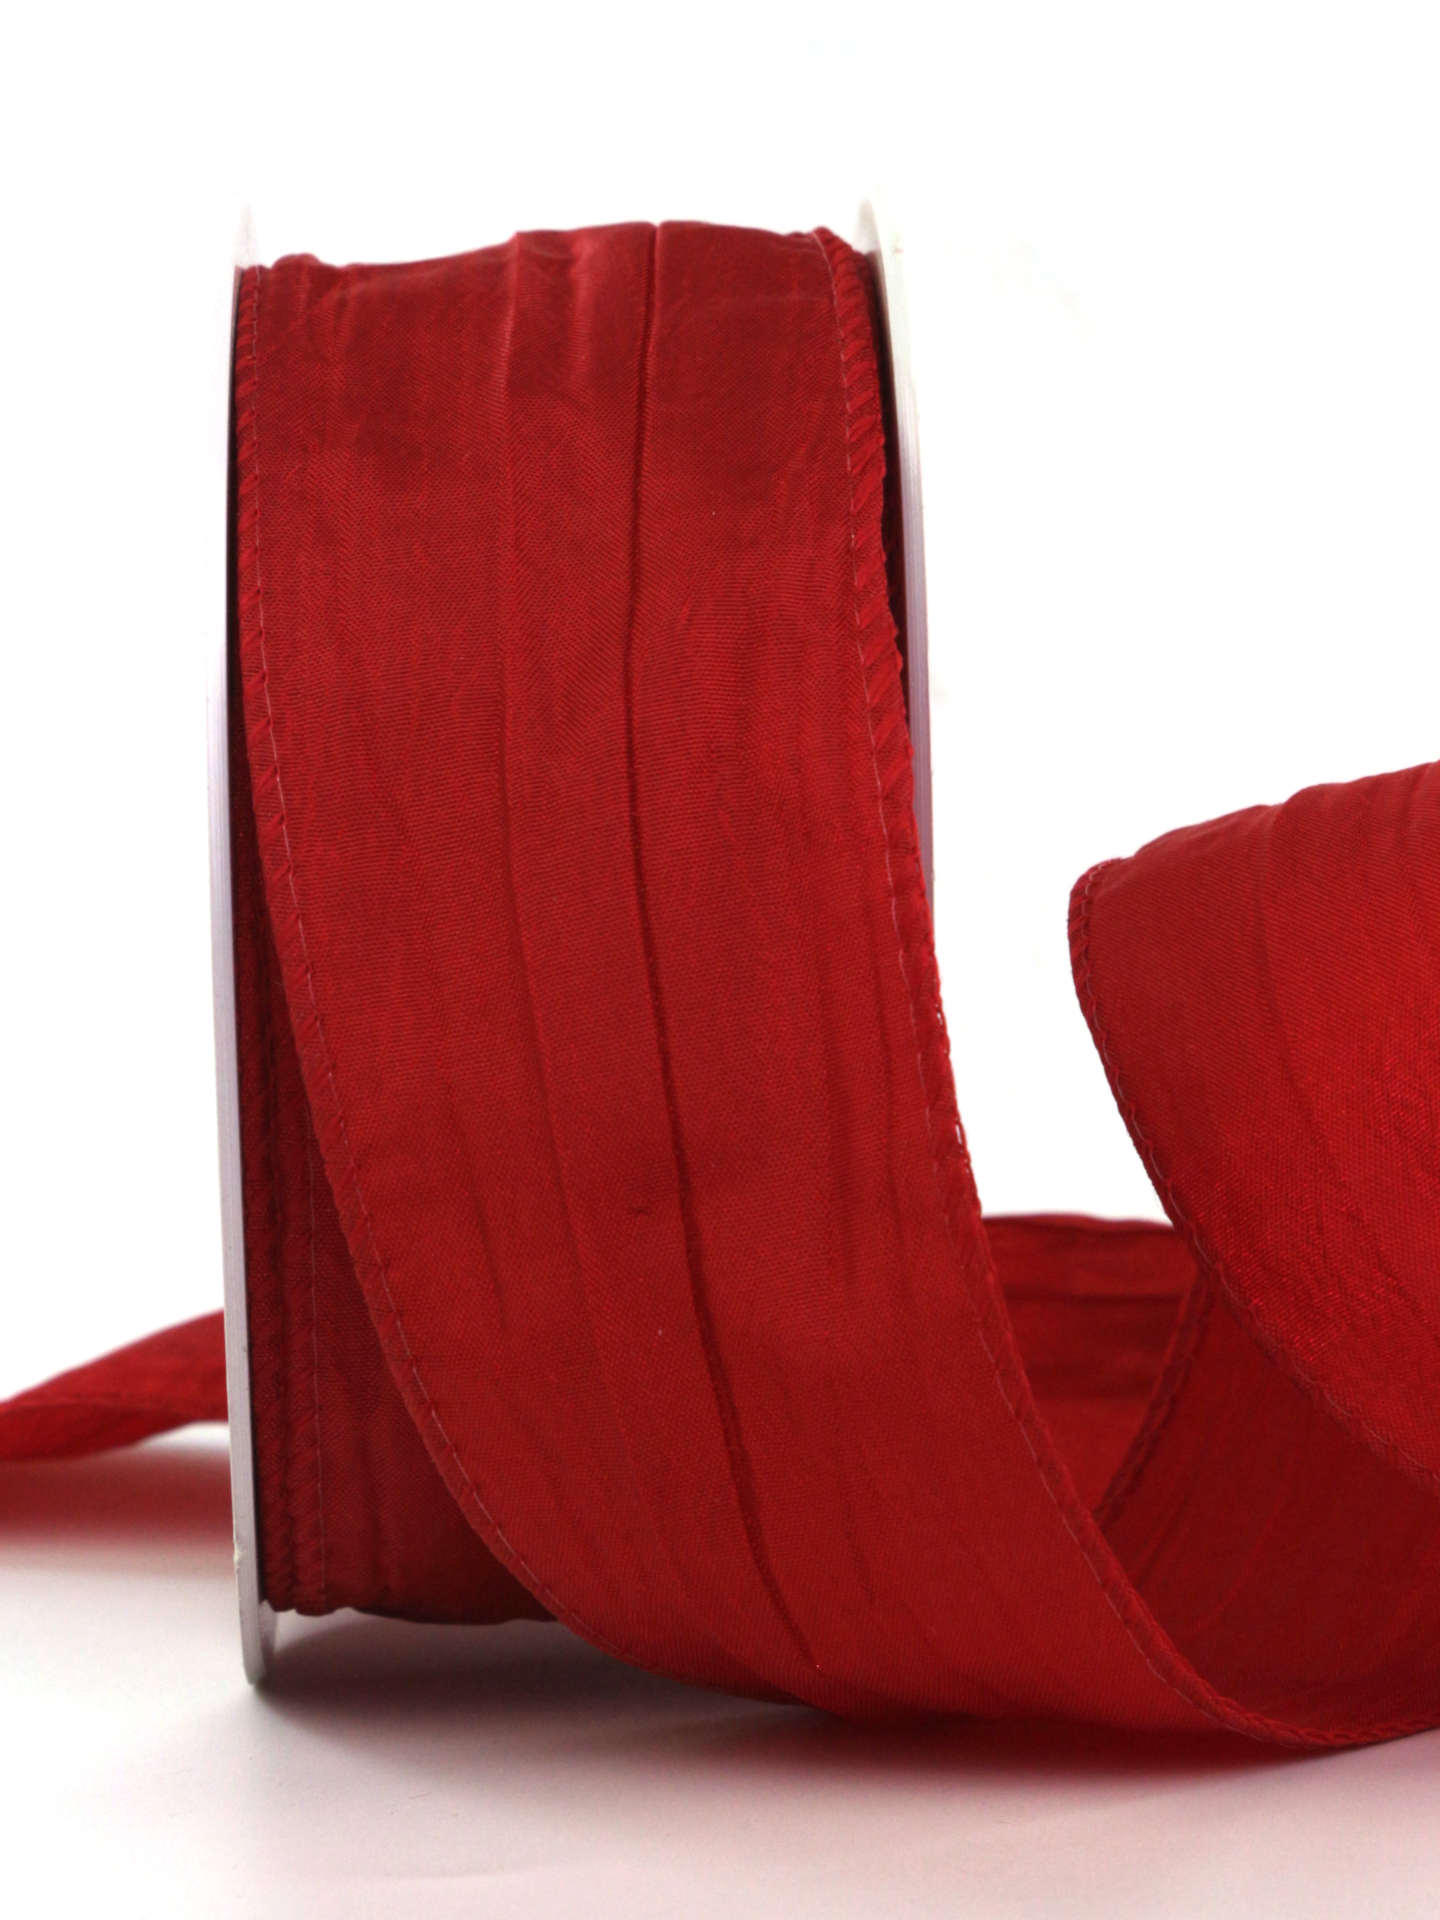 Crash-Stoffband, rot, 50 mm breit, 10 m Rolle - geschenkband, geschenkband-einfarbig, dekoband